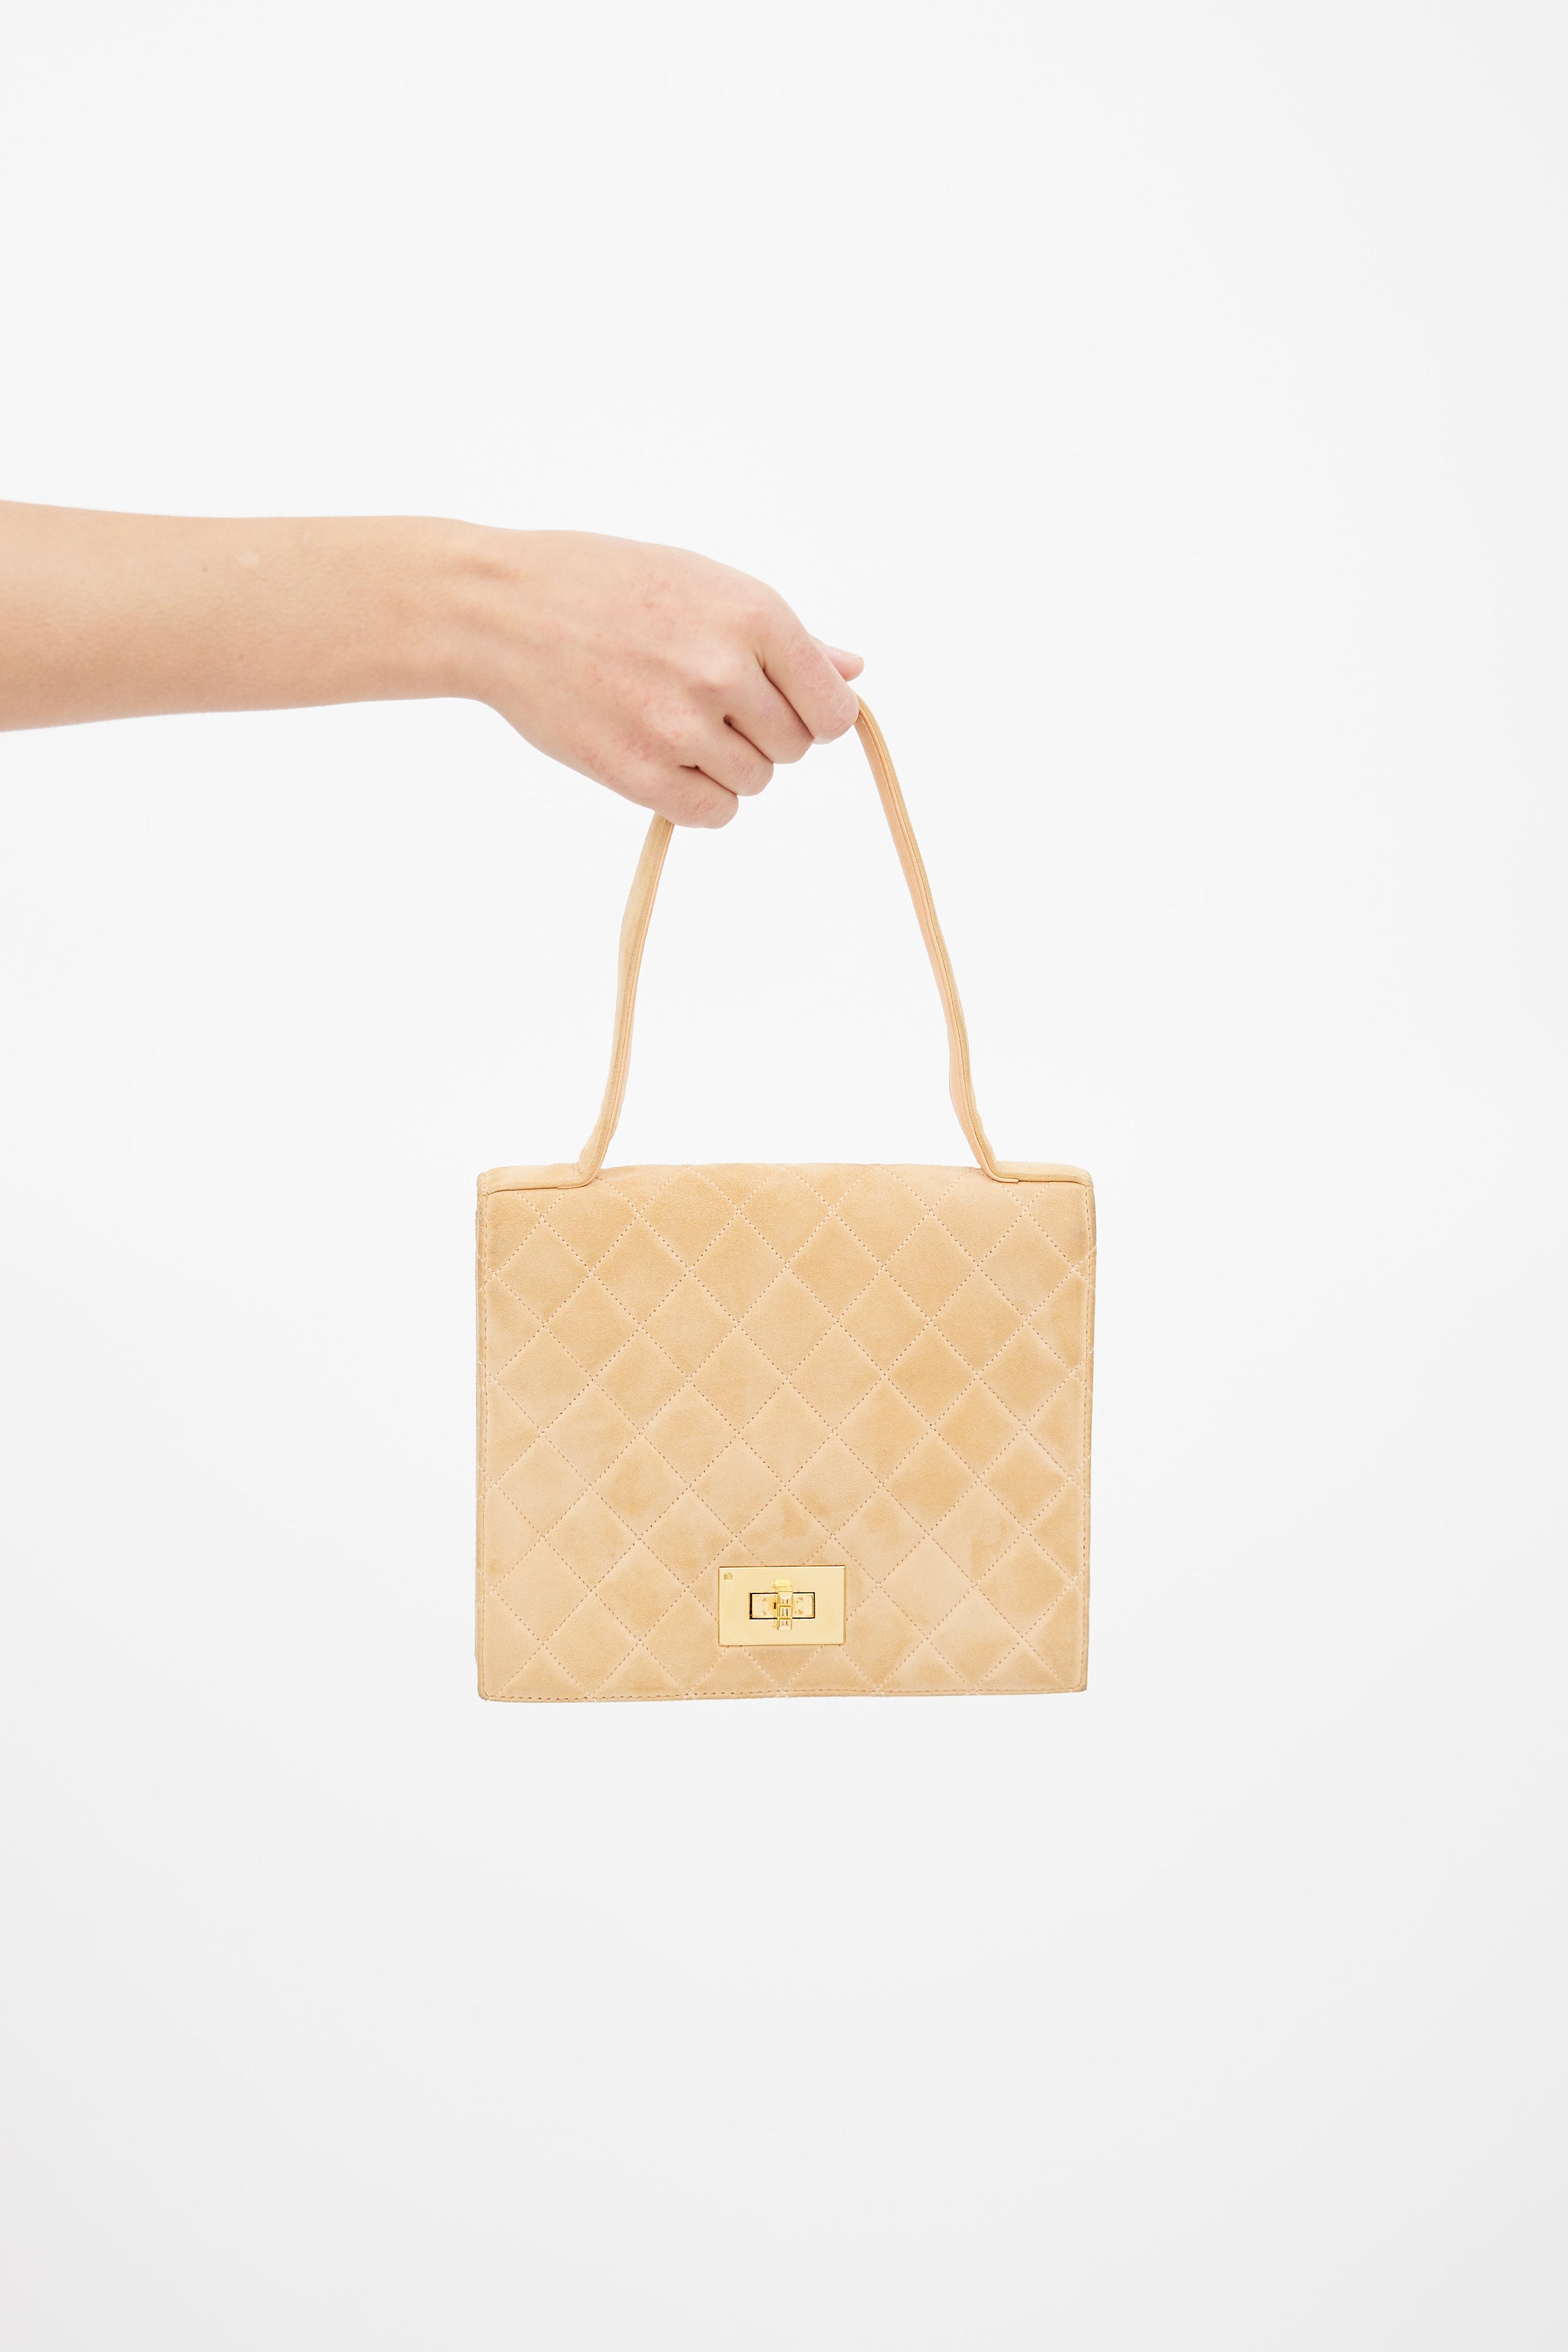 Timeless classique top handle handbag Chanel Beige in Suede - 35602690